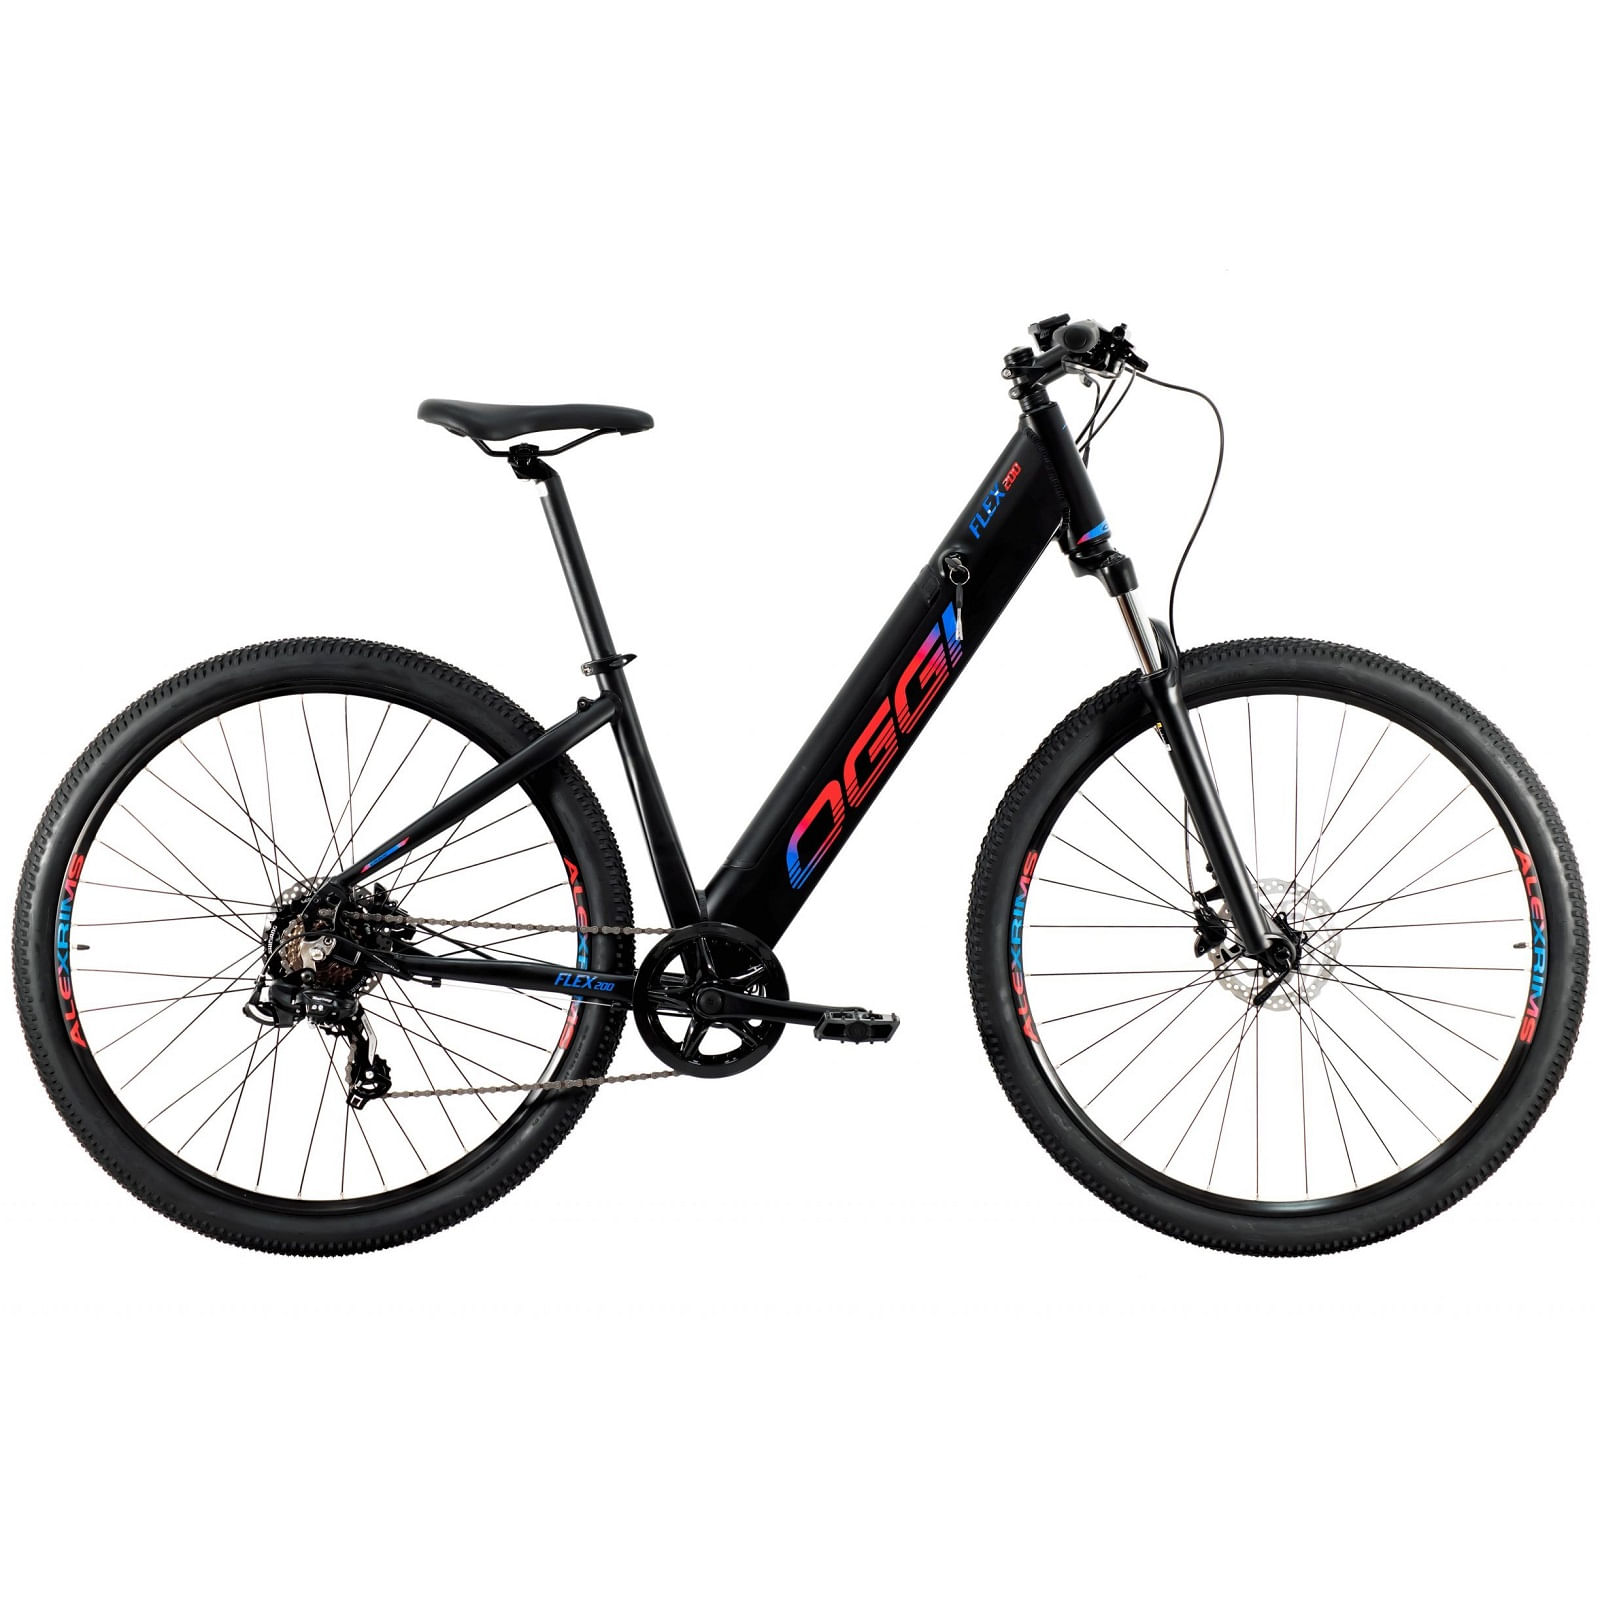 Bicicleta-Eletrica-Oggi-Flex-200-E-Bike-Aro-29-250W-2021-Preto-Azul-e-Vermelho---10709